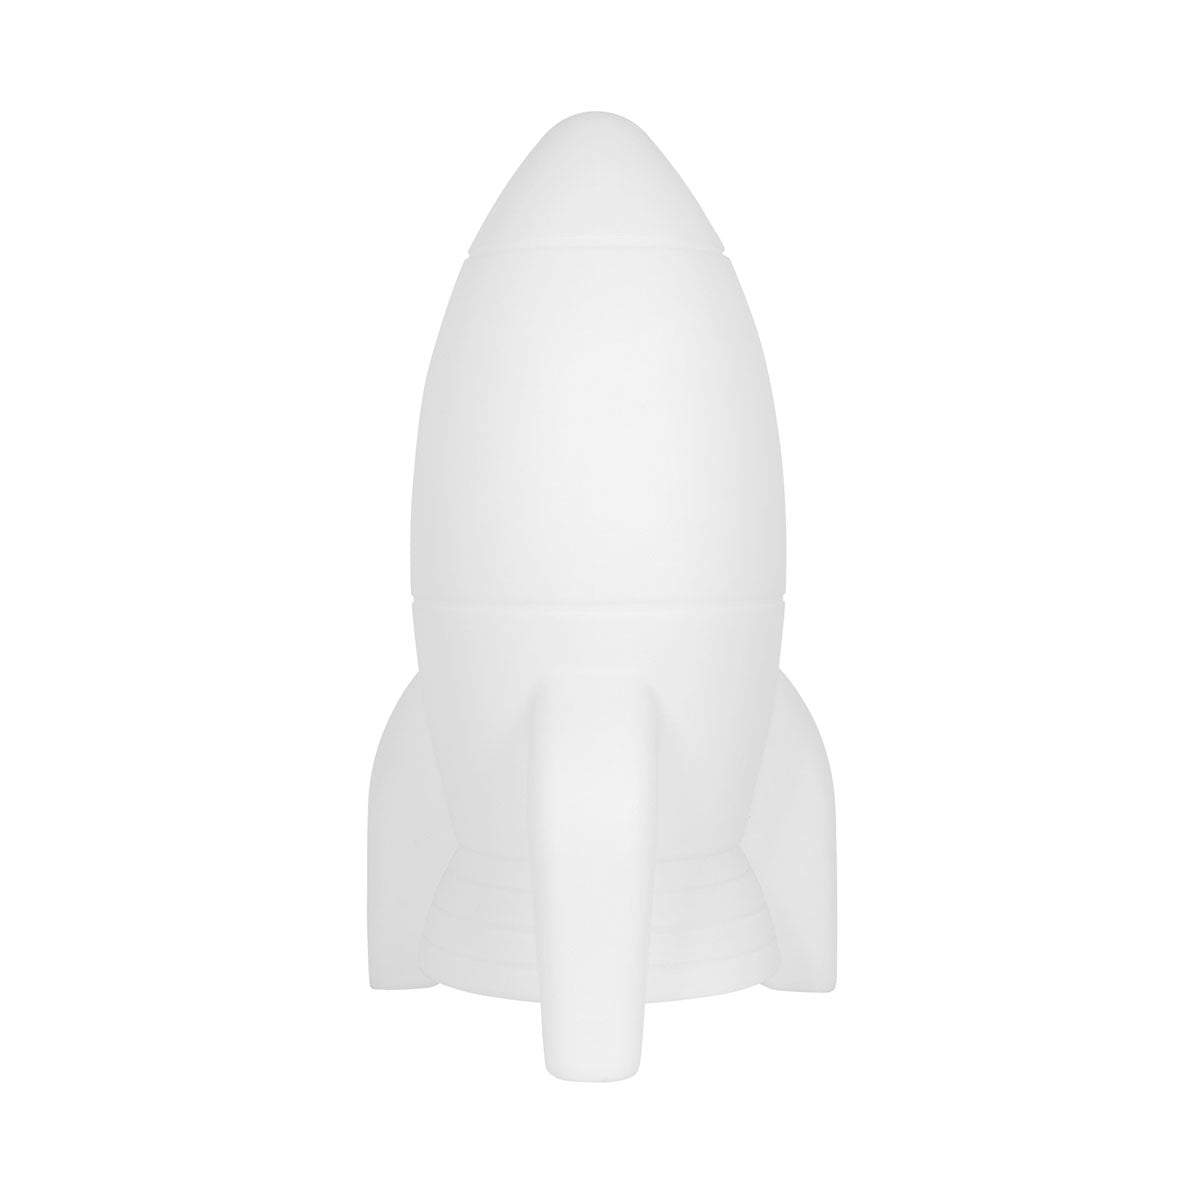 Deze stoere kinderkamerlamp Apollo medium van Flow Amsterdam in de vorm van een raket gaat jouw kindje heel erg blij maken. De lamp kan met 1 tik van kleur veranderen, is oplaadbaar via USB en gemaakt van stevig en hard materiaal. VanZus